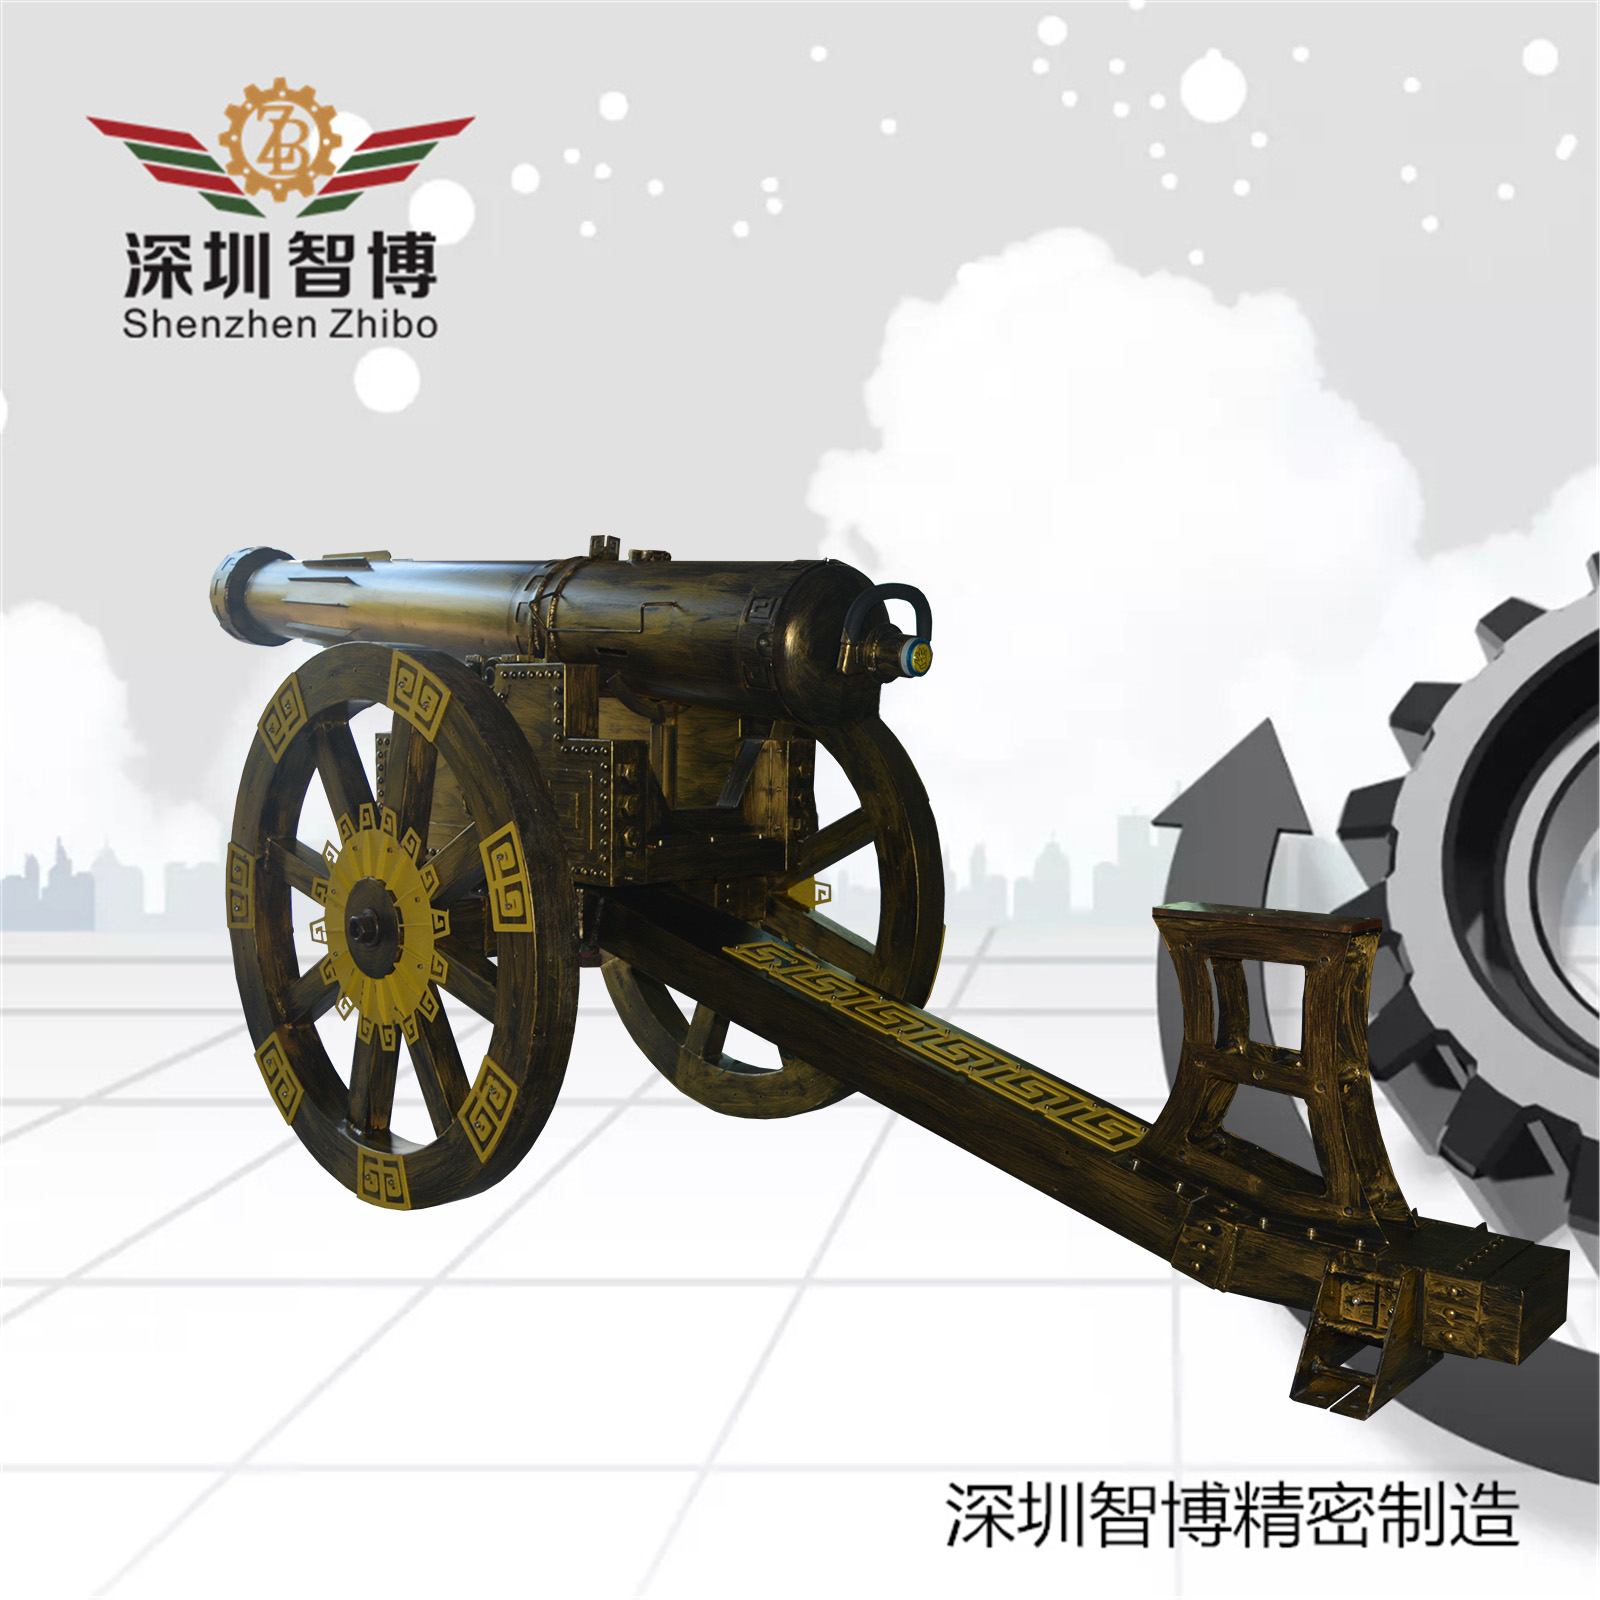 深圳市智博精密机械制造有限公司-古铜色大炮